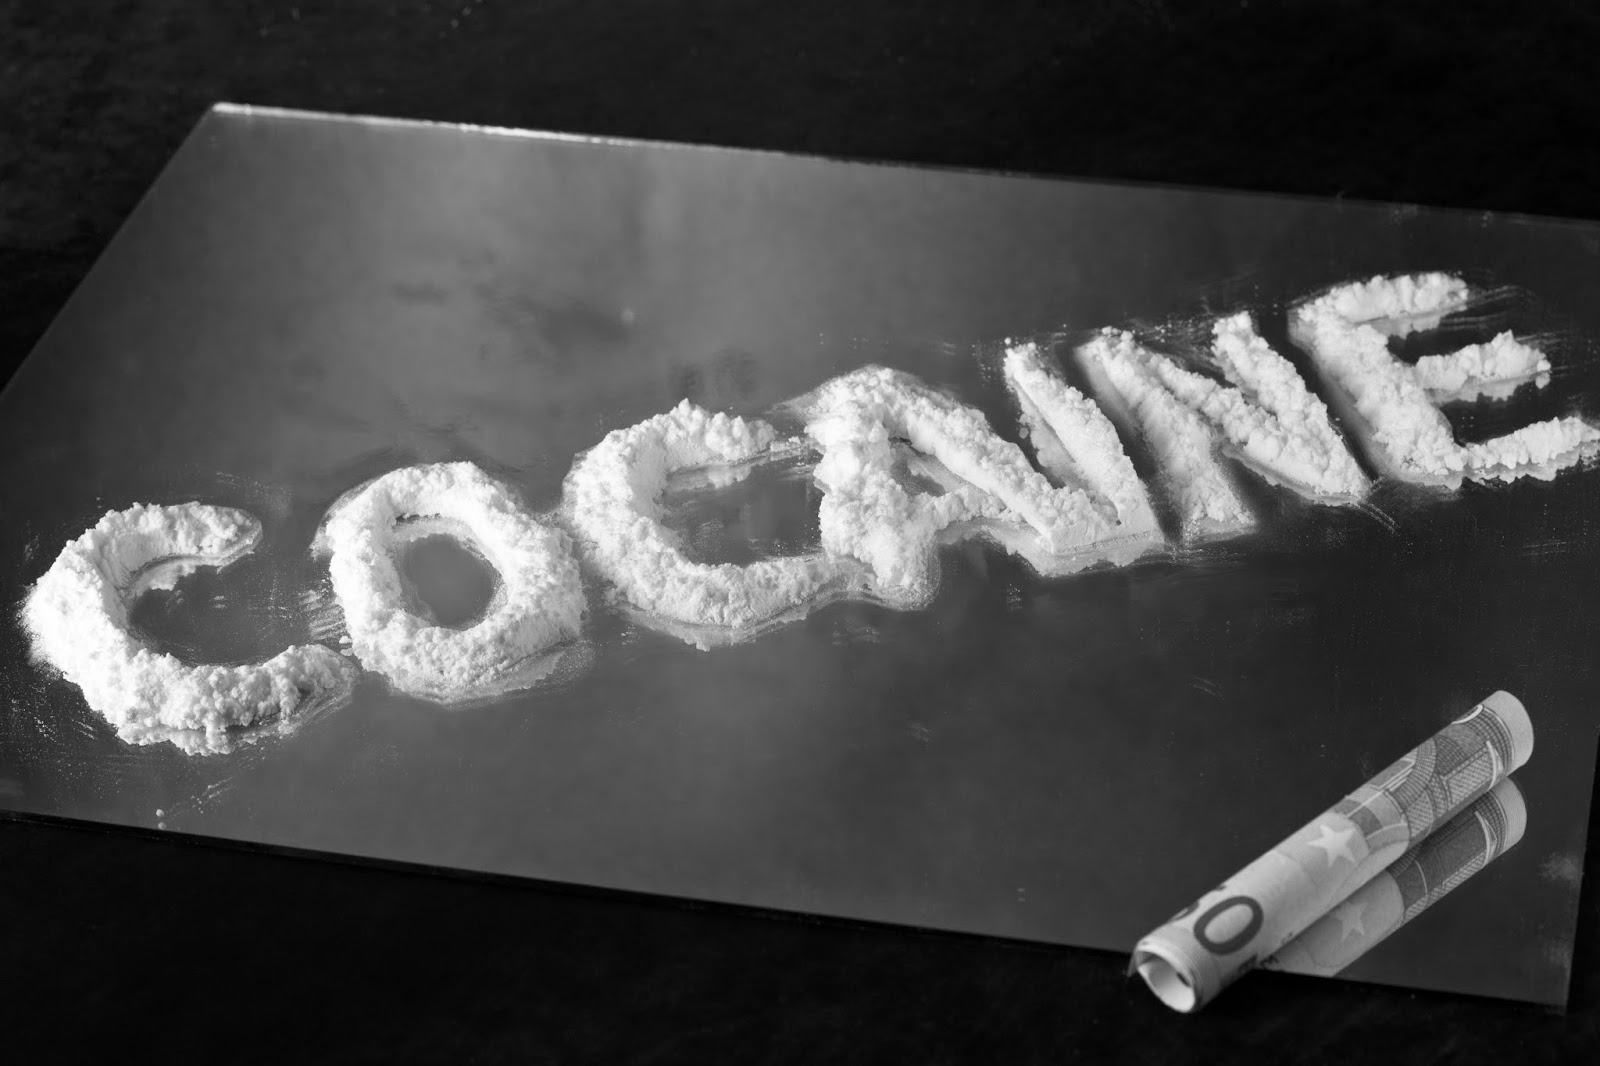 صورة أكادير:توقيف مواطن سينغالي متلبسا بحيازة حوالي 100 غرام من مخدر الكوكايين